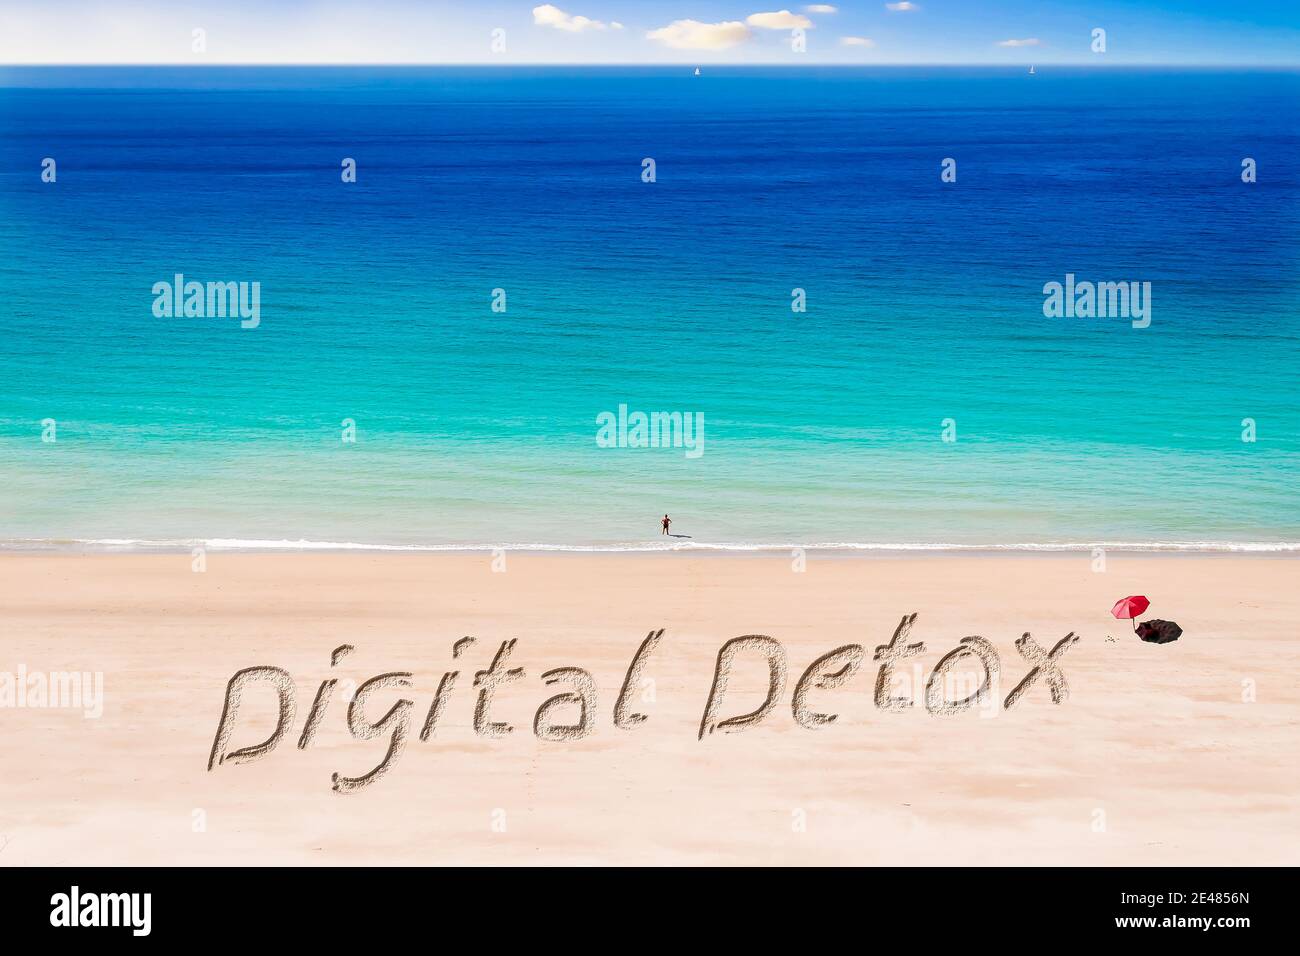 Las palabras Detox Digital escrito en una playa soleada Foto de stock